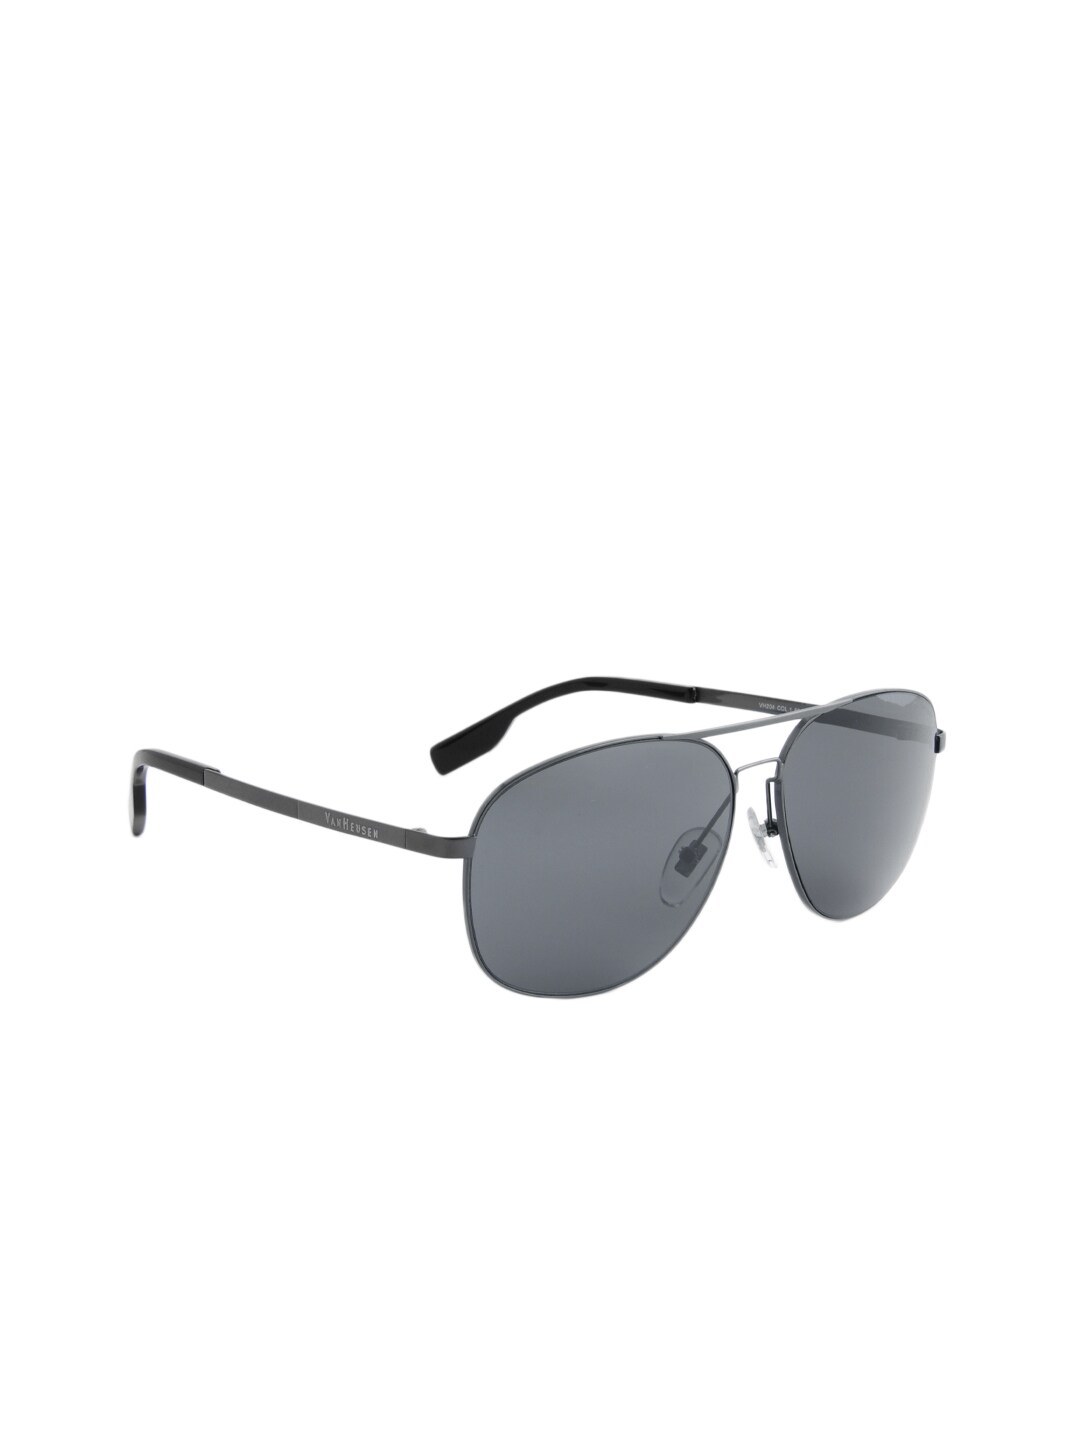 Van Heusen Men Grey Sunglasses